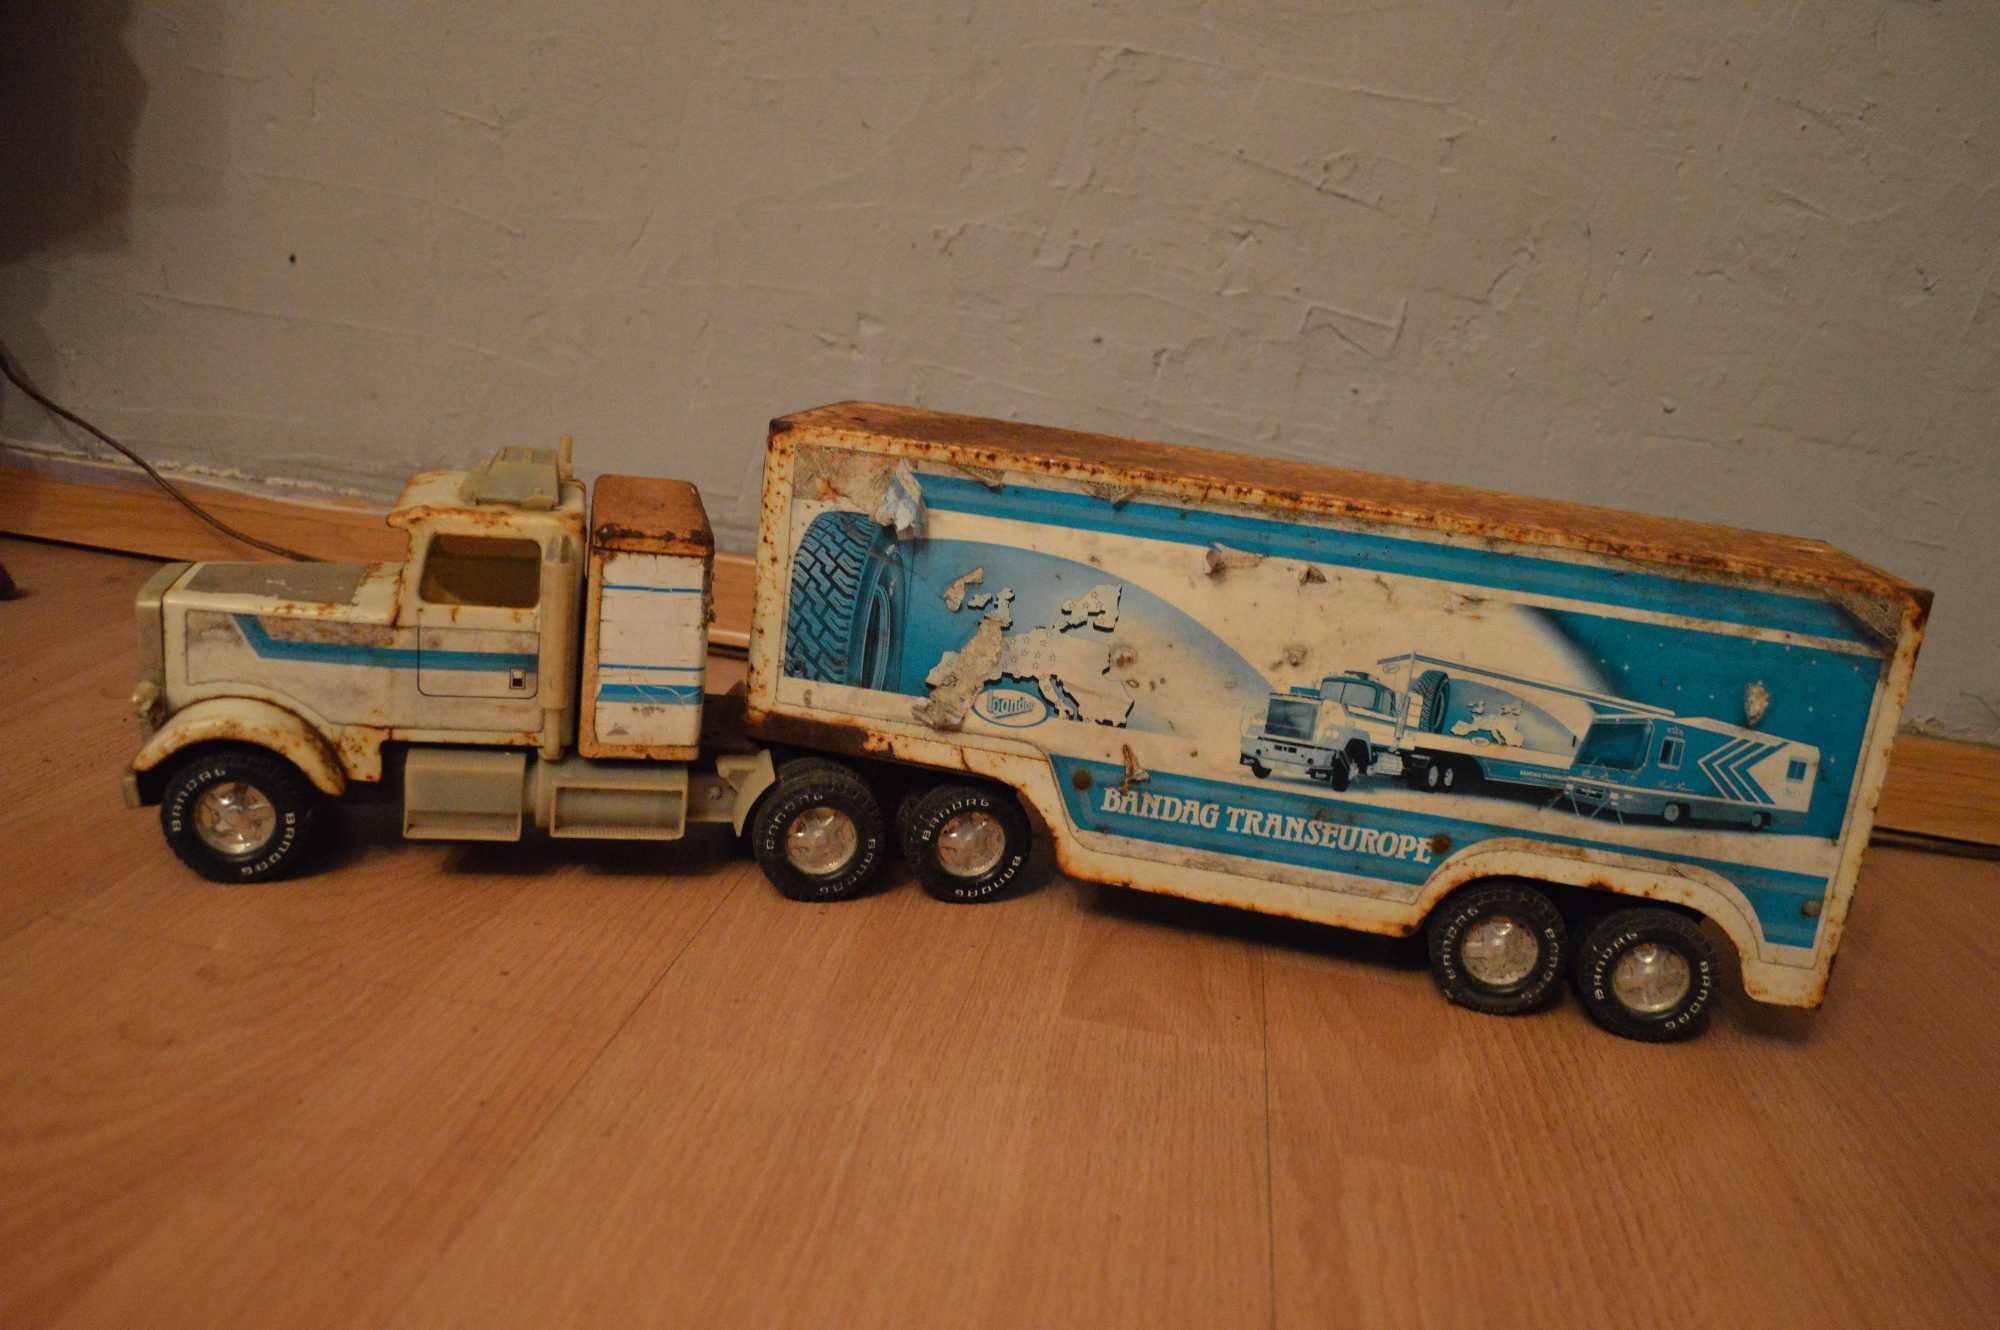 blaszana zabawka samochod metalowy stara zabawka duza ciężarówka dlug